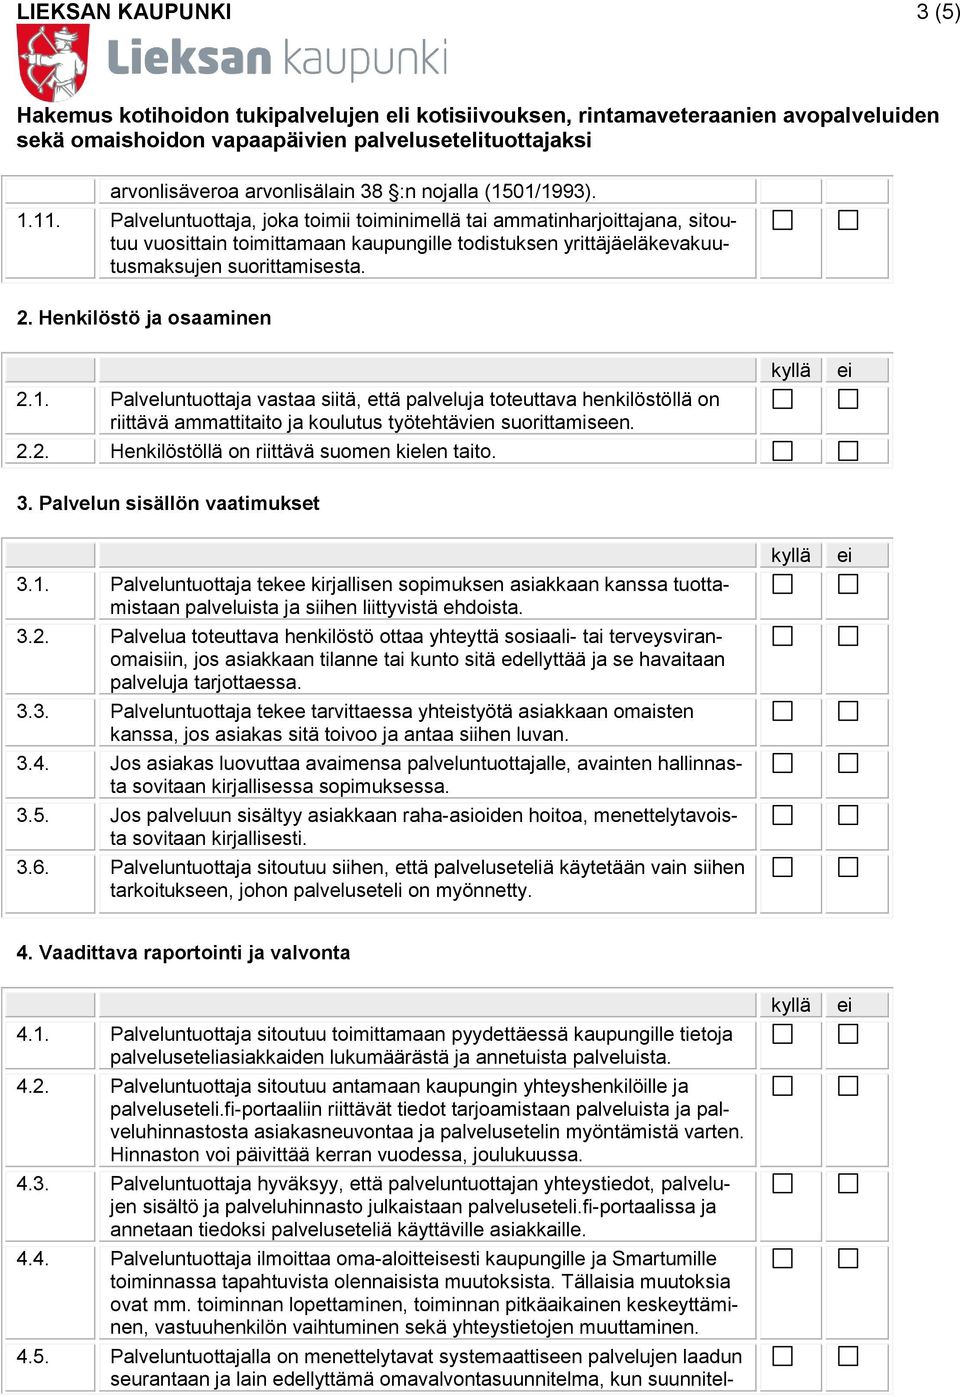 Henkilöstö ja osaaminen 2.1. Palveluntuottaja vastaa siitä, että palveluja toteuttava henkilöstöllä on riittävä ammattitaito ja koulutus työtehtävien suorittamiseen. 2.2. Henkilöstöllä on riittävä suomen kielen taito.